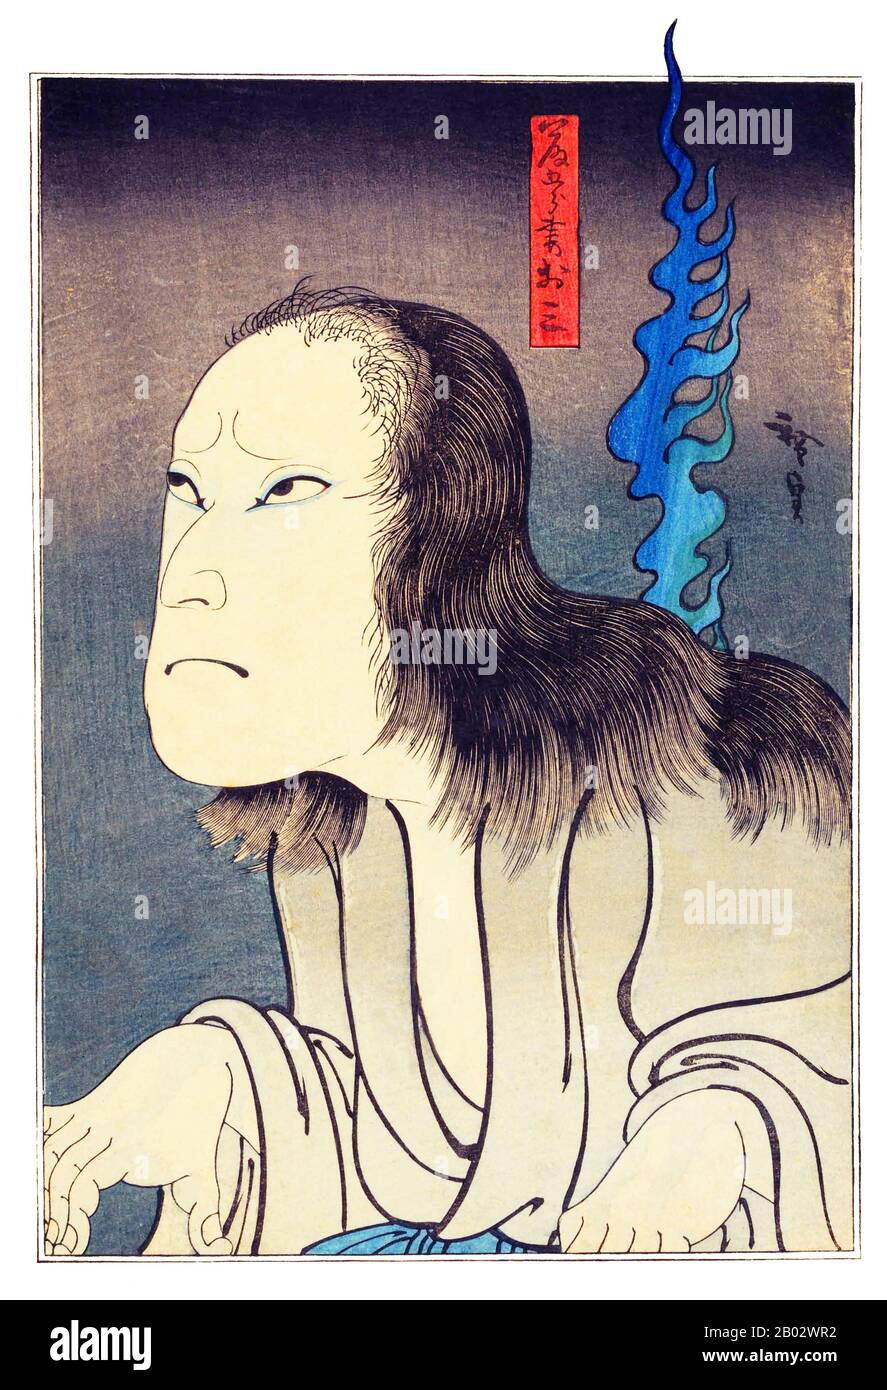 Konishi Hirosada war der produktivste Osaka-basierte Designer von Ukiyo-e-Holzblockdrucken während der späten Edo-Zeit. Wie die meisten Produzenten von Kamigata-e) - Drucke aus den Regionen Osaka und Kyoto - spezialisierte er sich auf Akusha-e-Schauspieler-Drucke. Hirosada ist vor allem für seine Diptychen und Triptychen sowie für seine vielen okubi-e Porträts der Hauptdarsteller auf der Osaka-Kabuki-Bühne während seines Tages bekannt. Entsprechend der Sitte für Künstler der Edo-Zeit verwendete Hirosada im Laufe seiner Karriere eine Reihe verschiedener Go-Kunstnamen, darunter Gosotei Hirosadao, Gorakutei Hirosada und Utagawa Hirosad Stockfoto